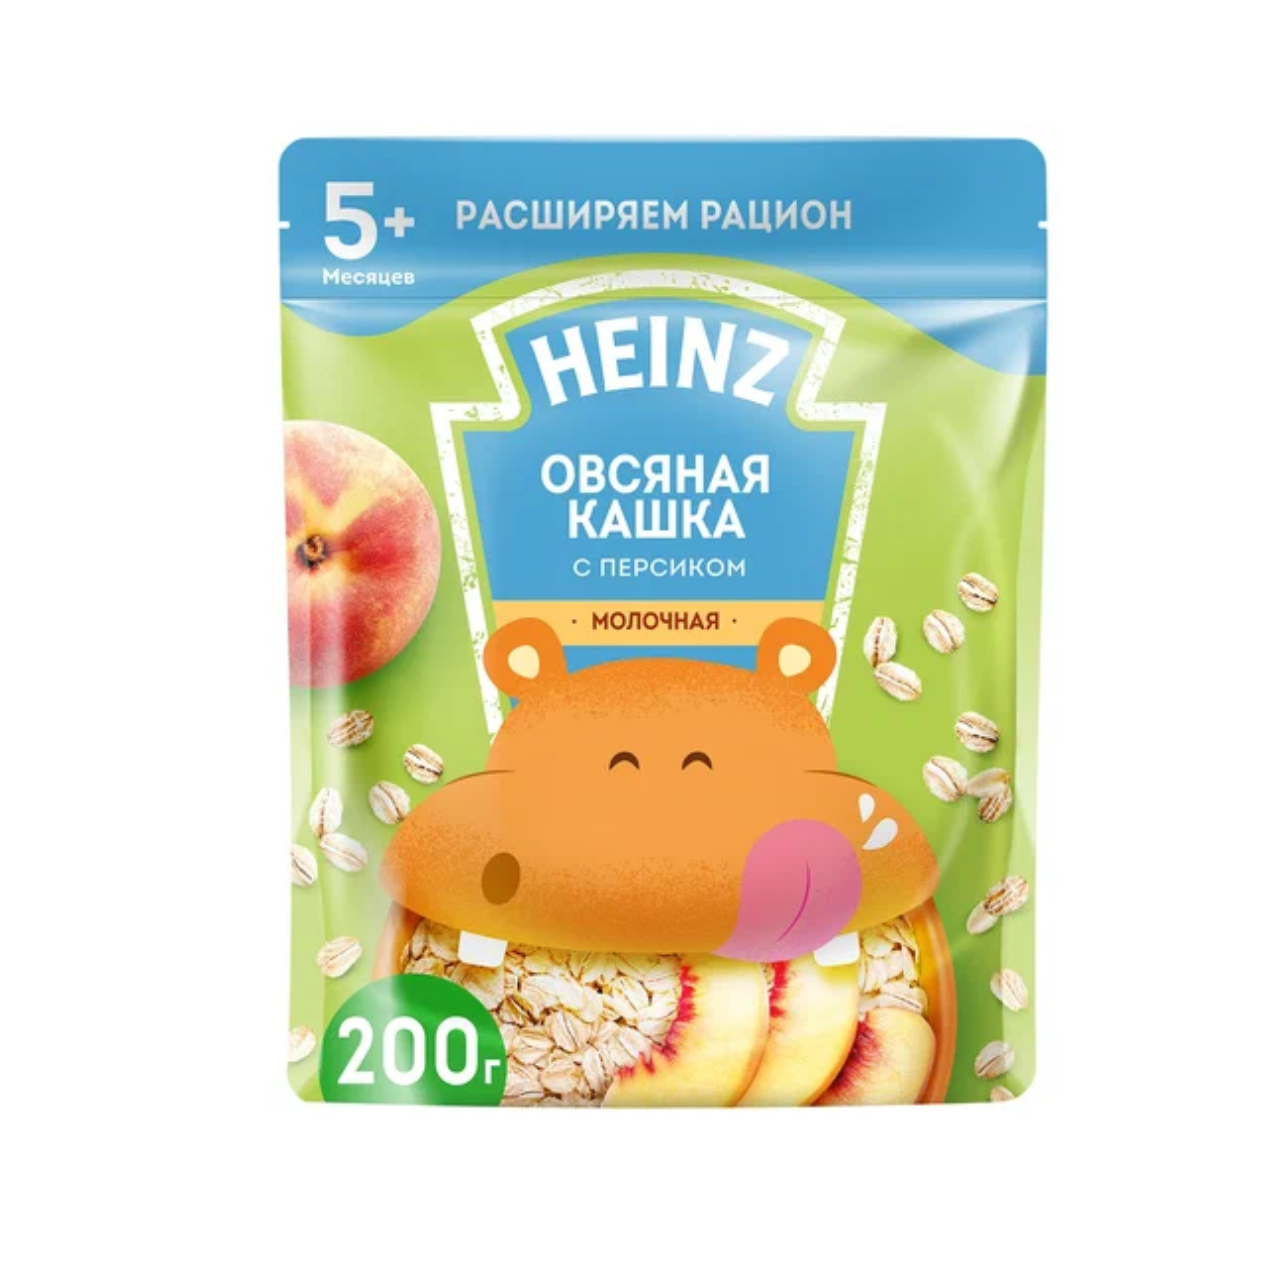 Каша Хайнс 200 г пакет молочная овсяная с персиком